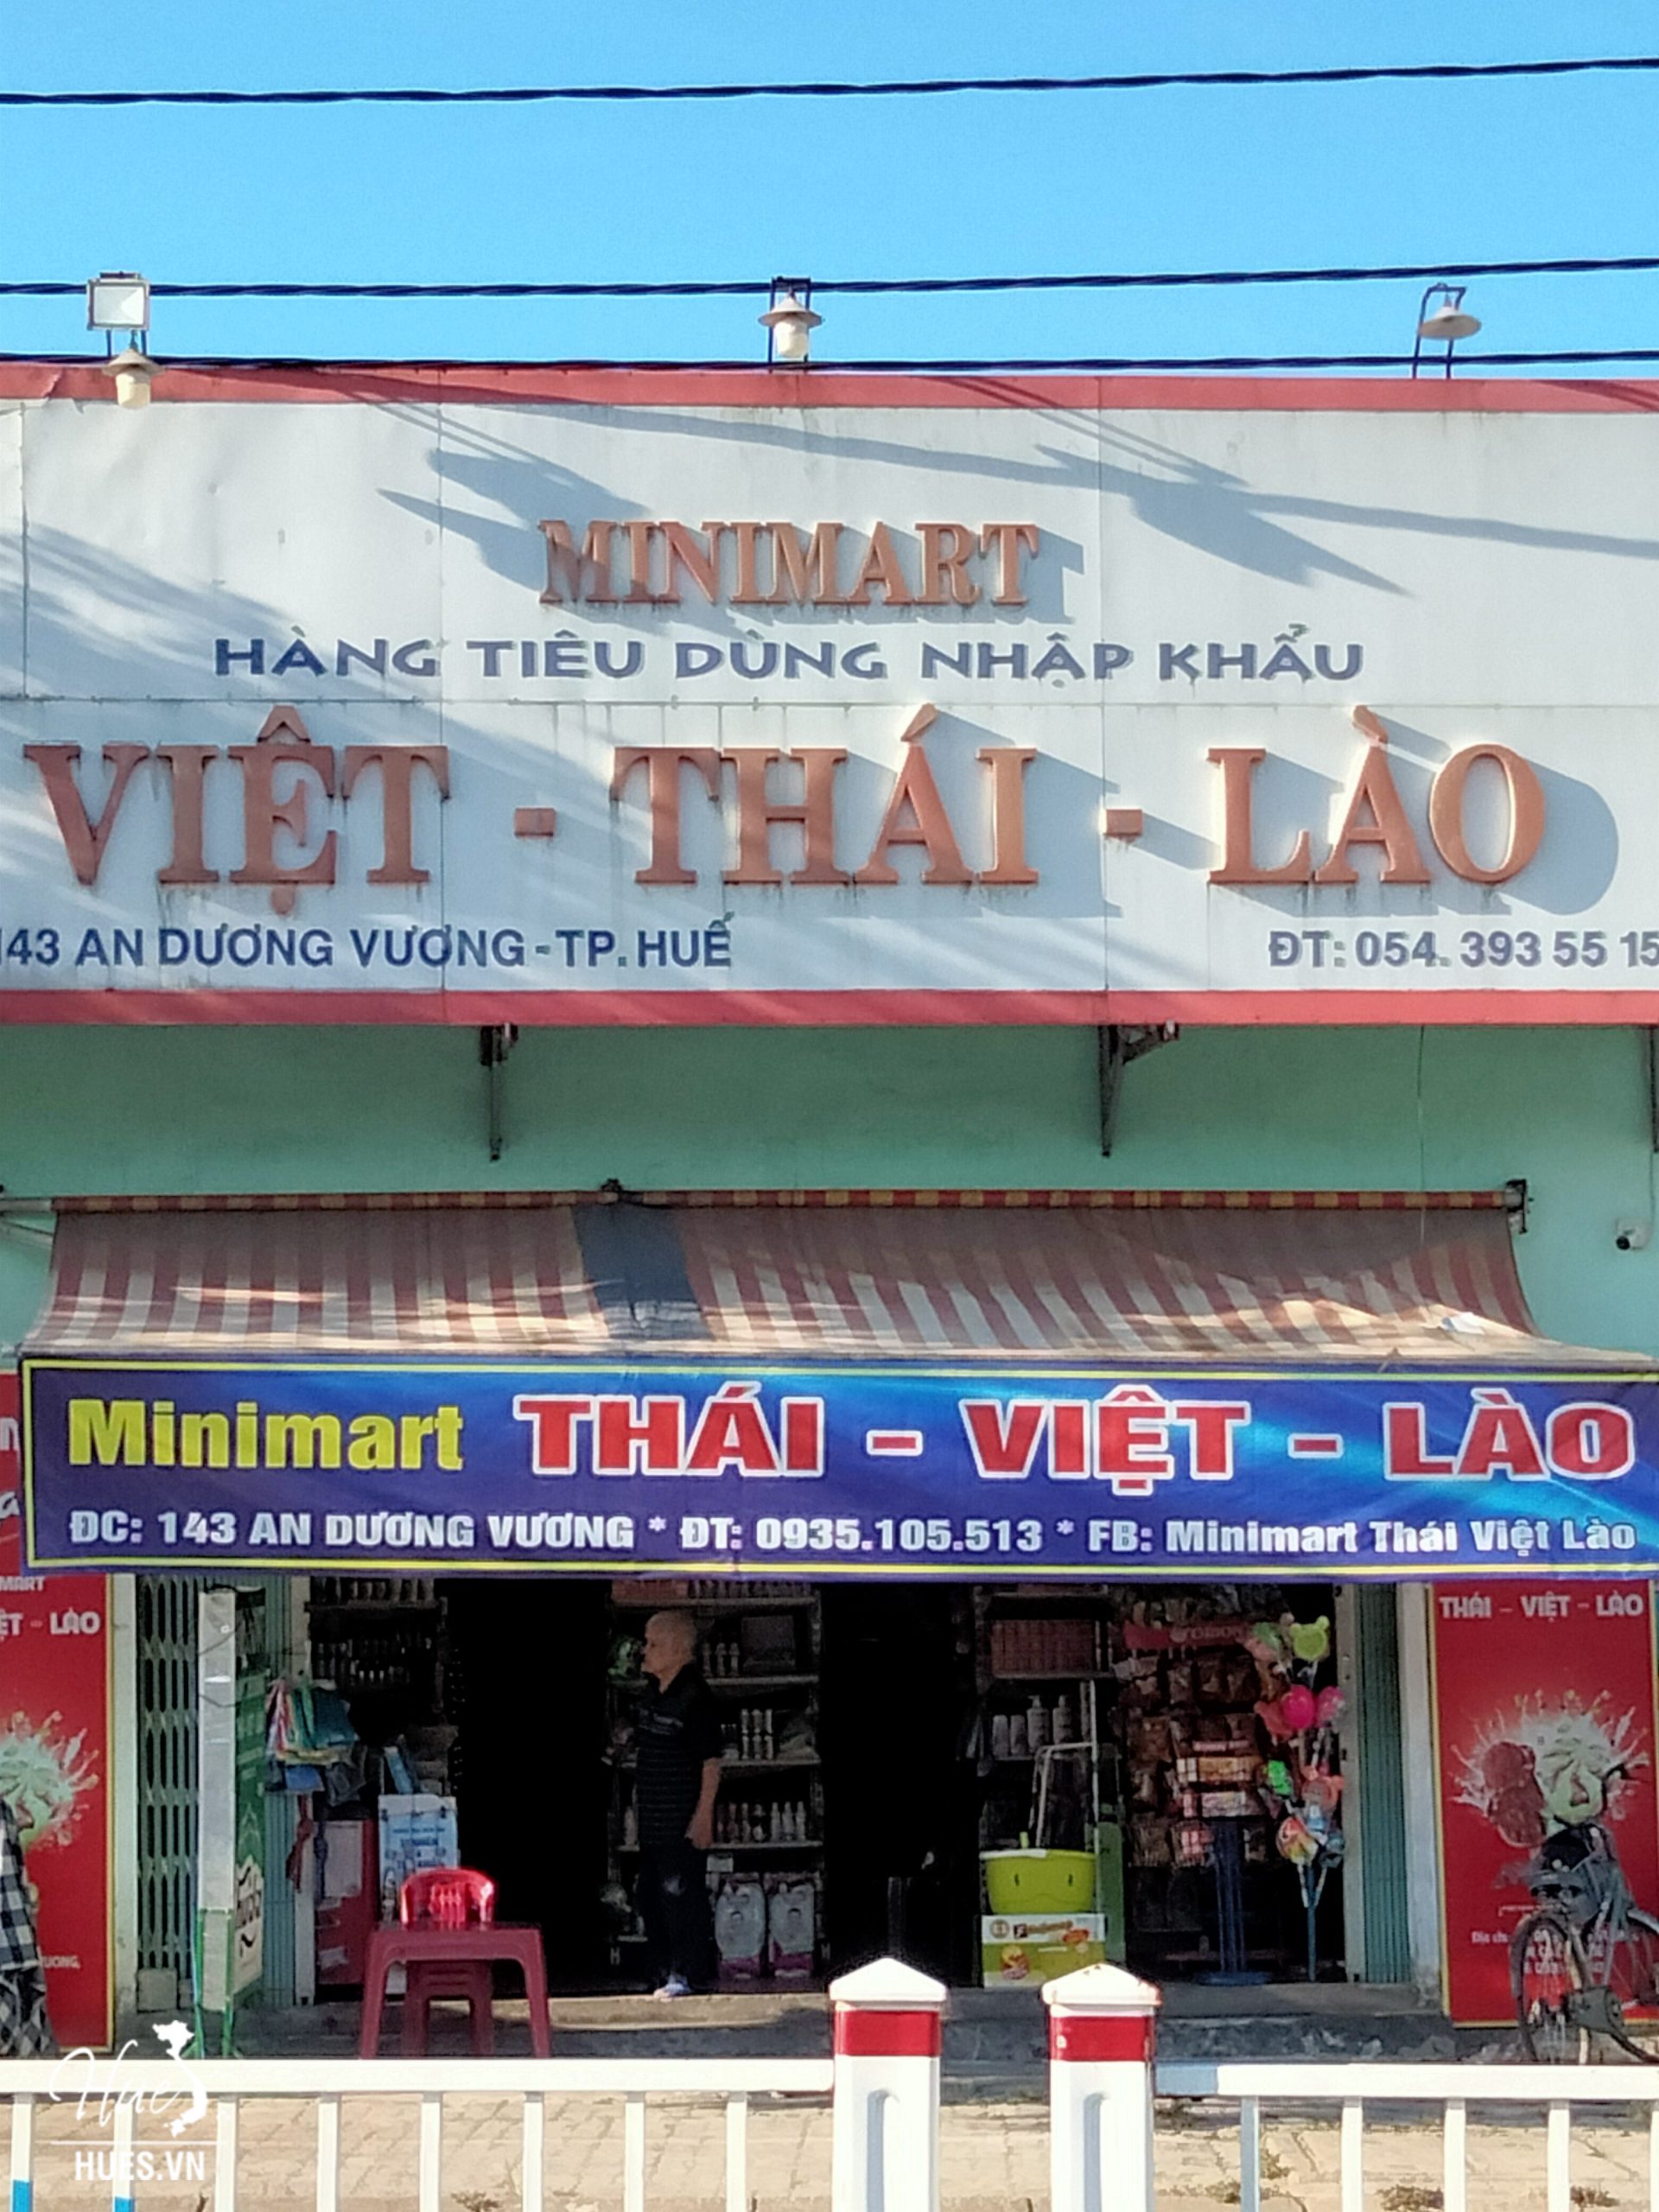 Minimart Việt – Thái – Lào